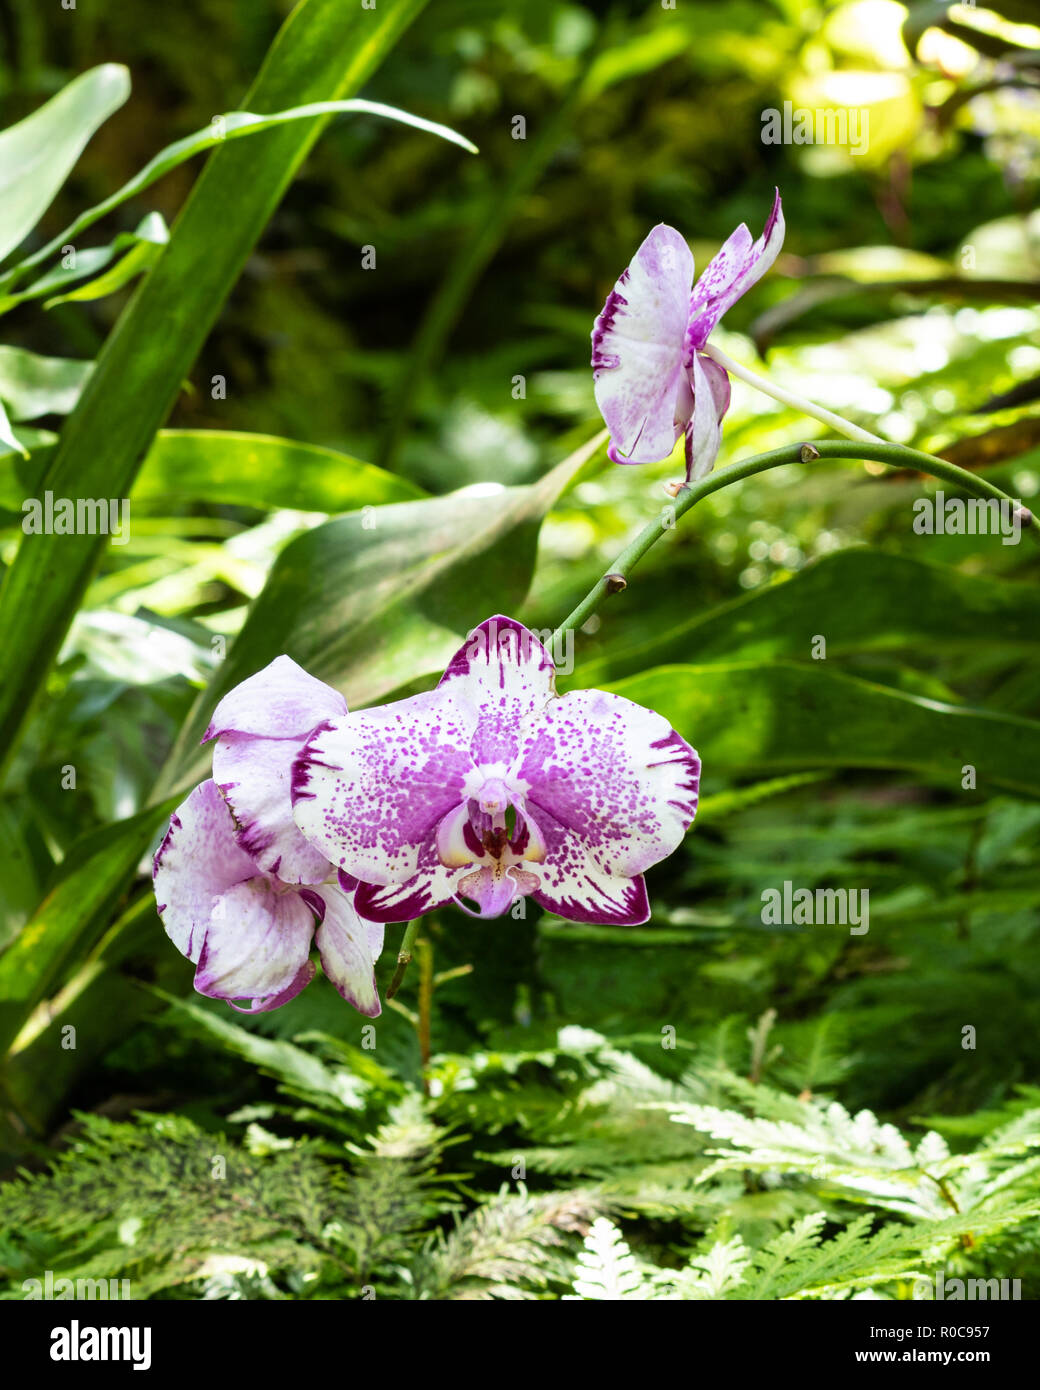 Bande de phalaenopsis (espèce) en forme d'orchidées au jardin botanique à Hilo, Hawaii. Pétales blanc avec accents violet et rose ; mouchetures vert fougères et l Banque D'Images